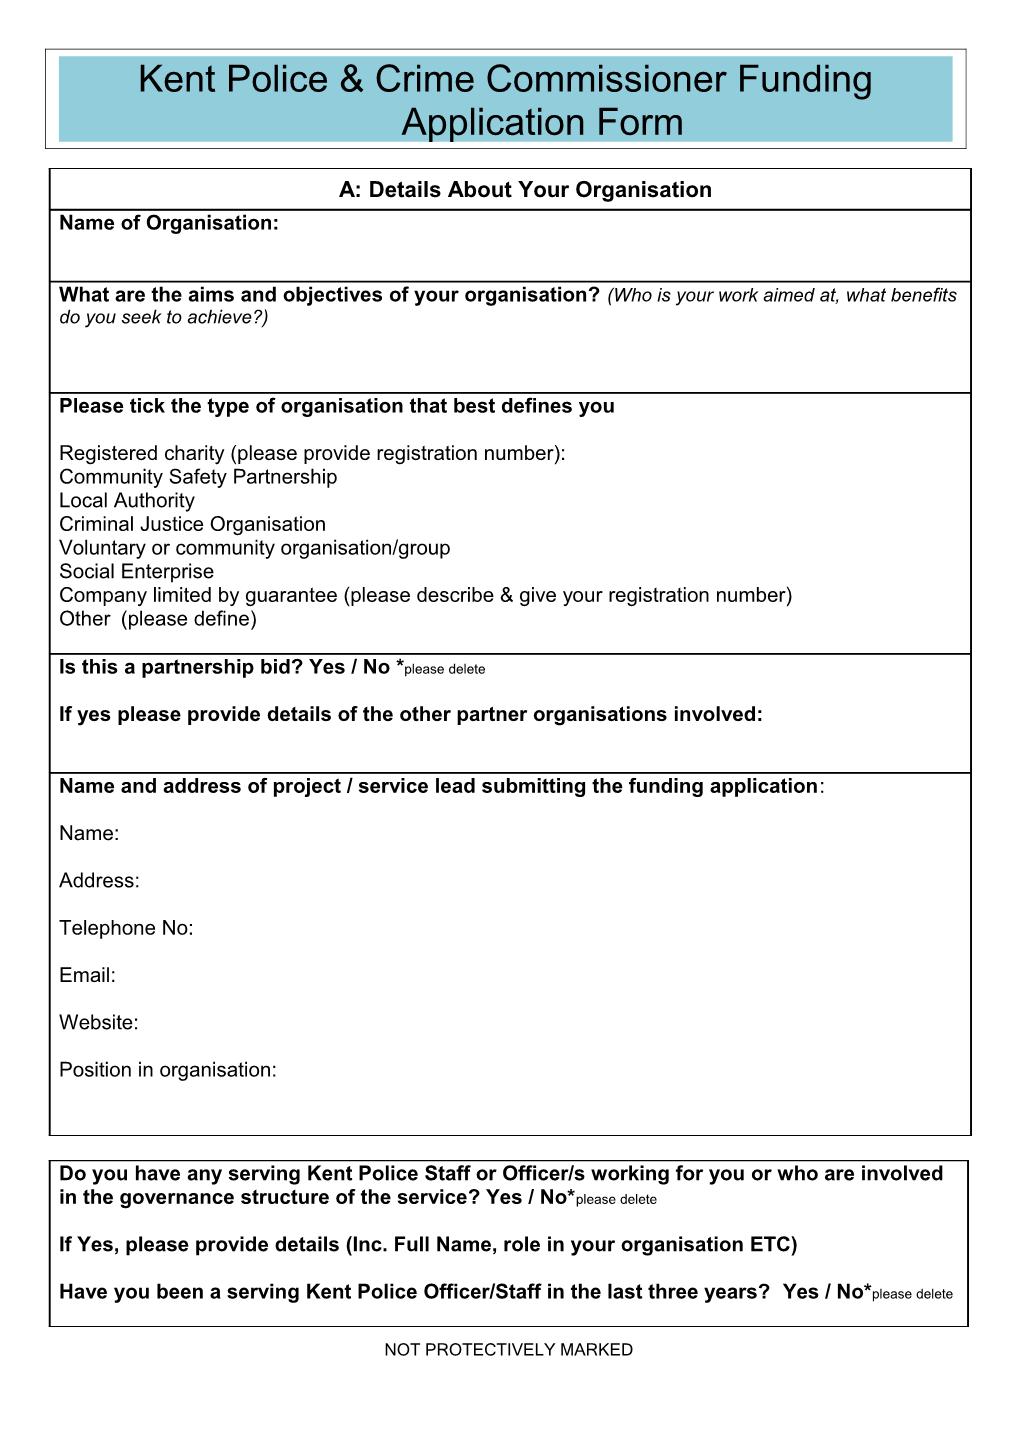 CAF-Application-Form-2013 2014